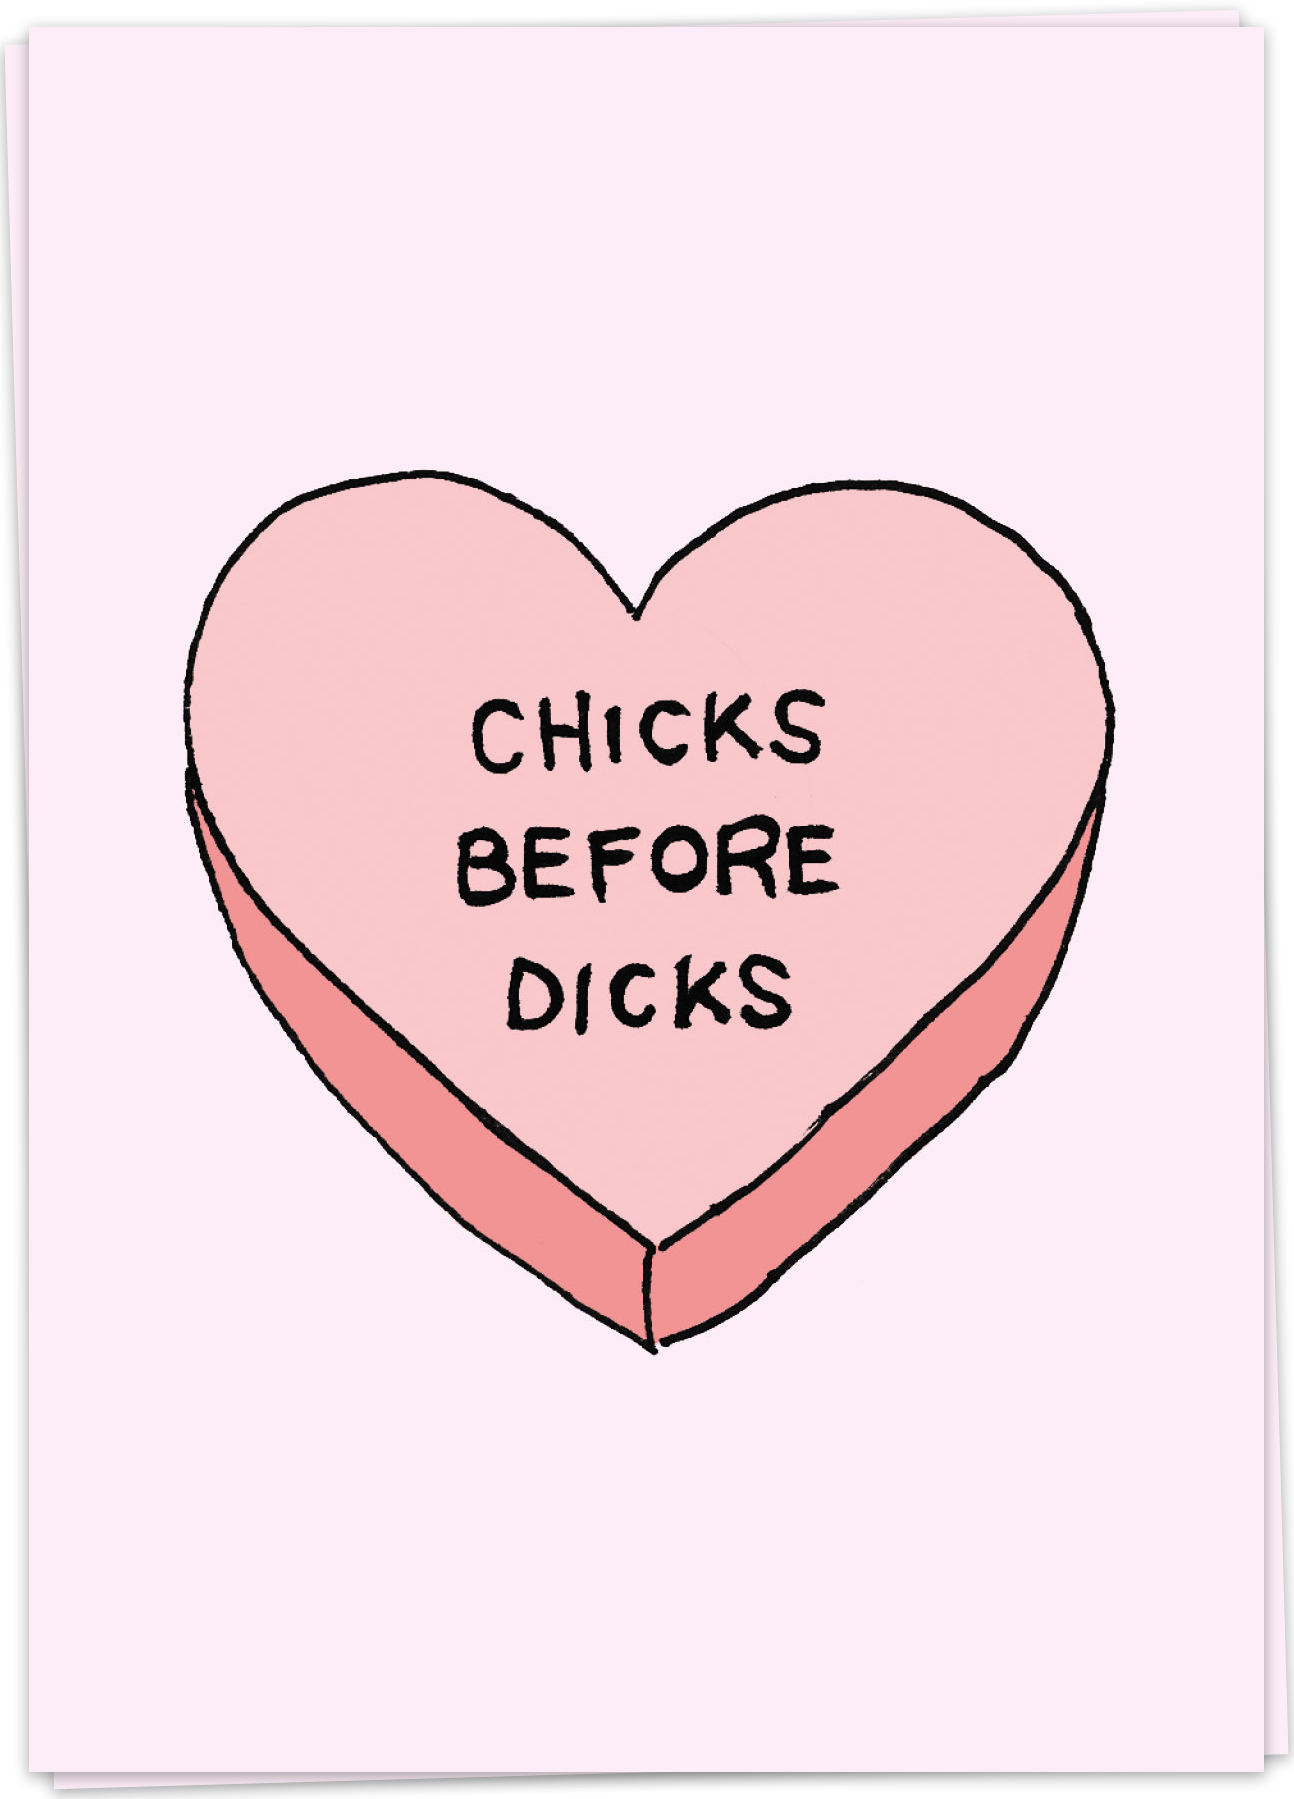 Chicks before dicks sayings